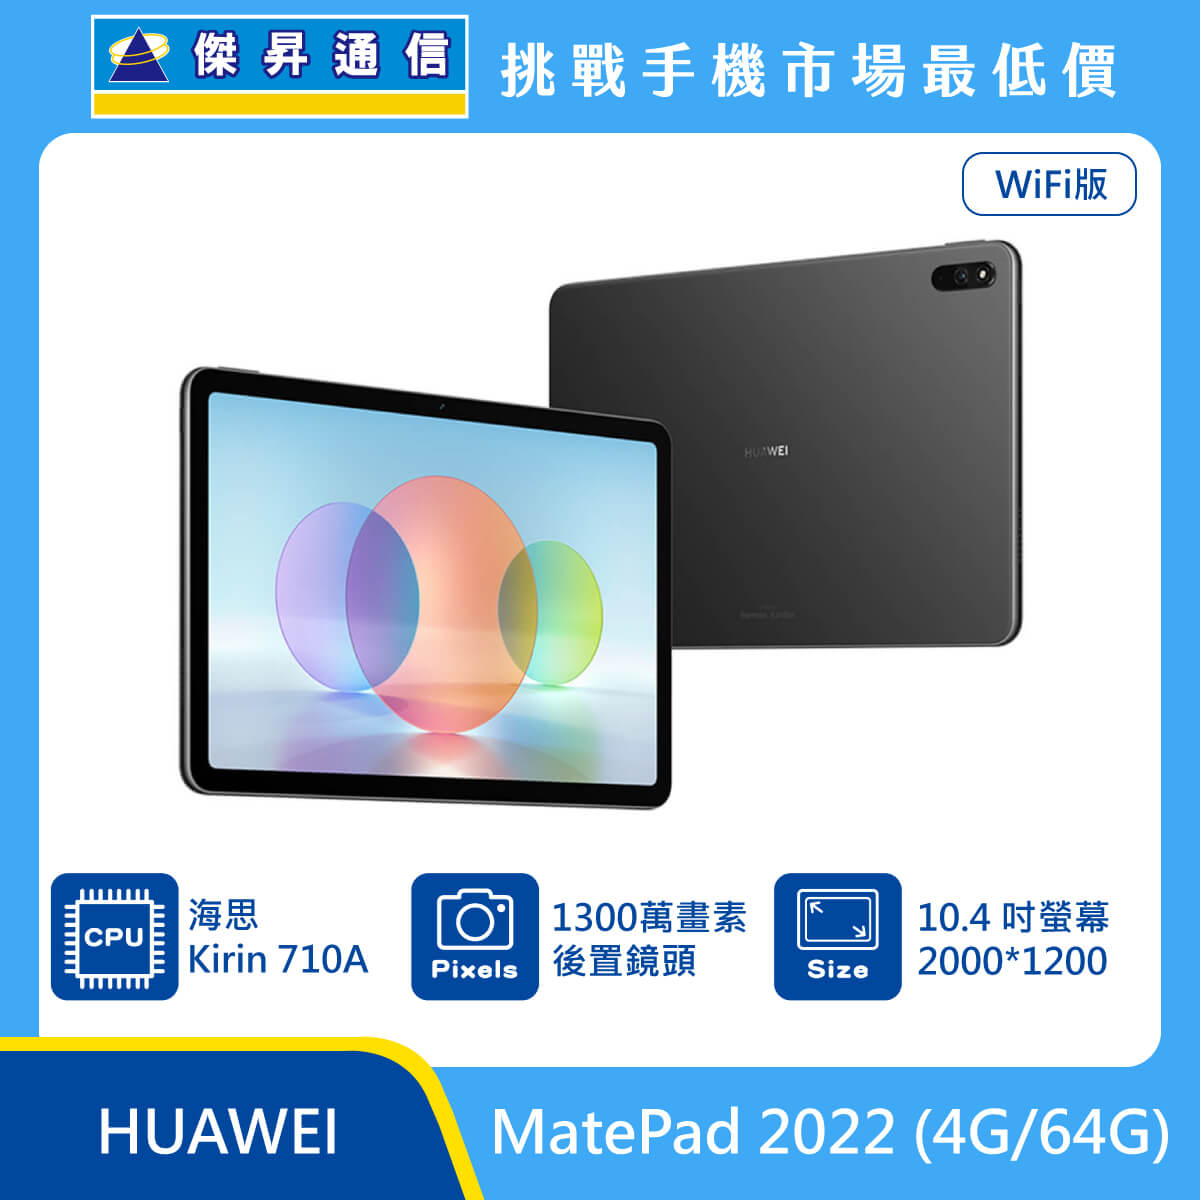 HUAWEI 平板 MatePad 2022 (4G/64G)